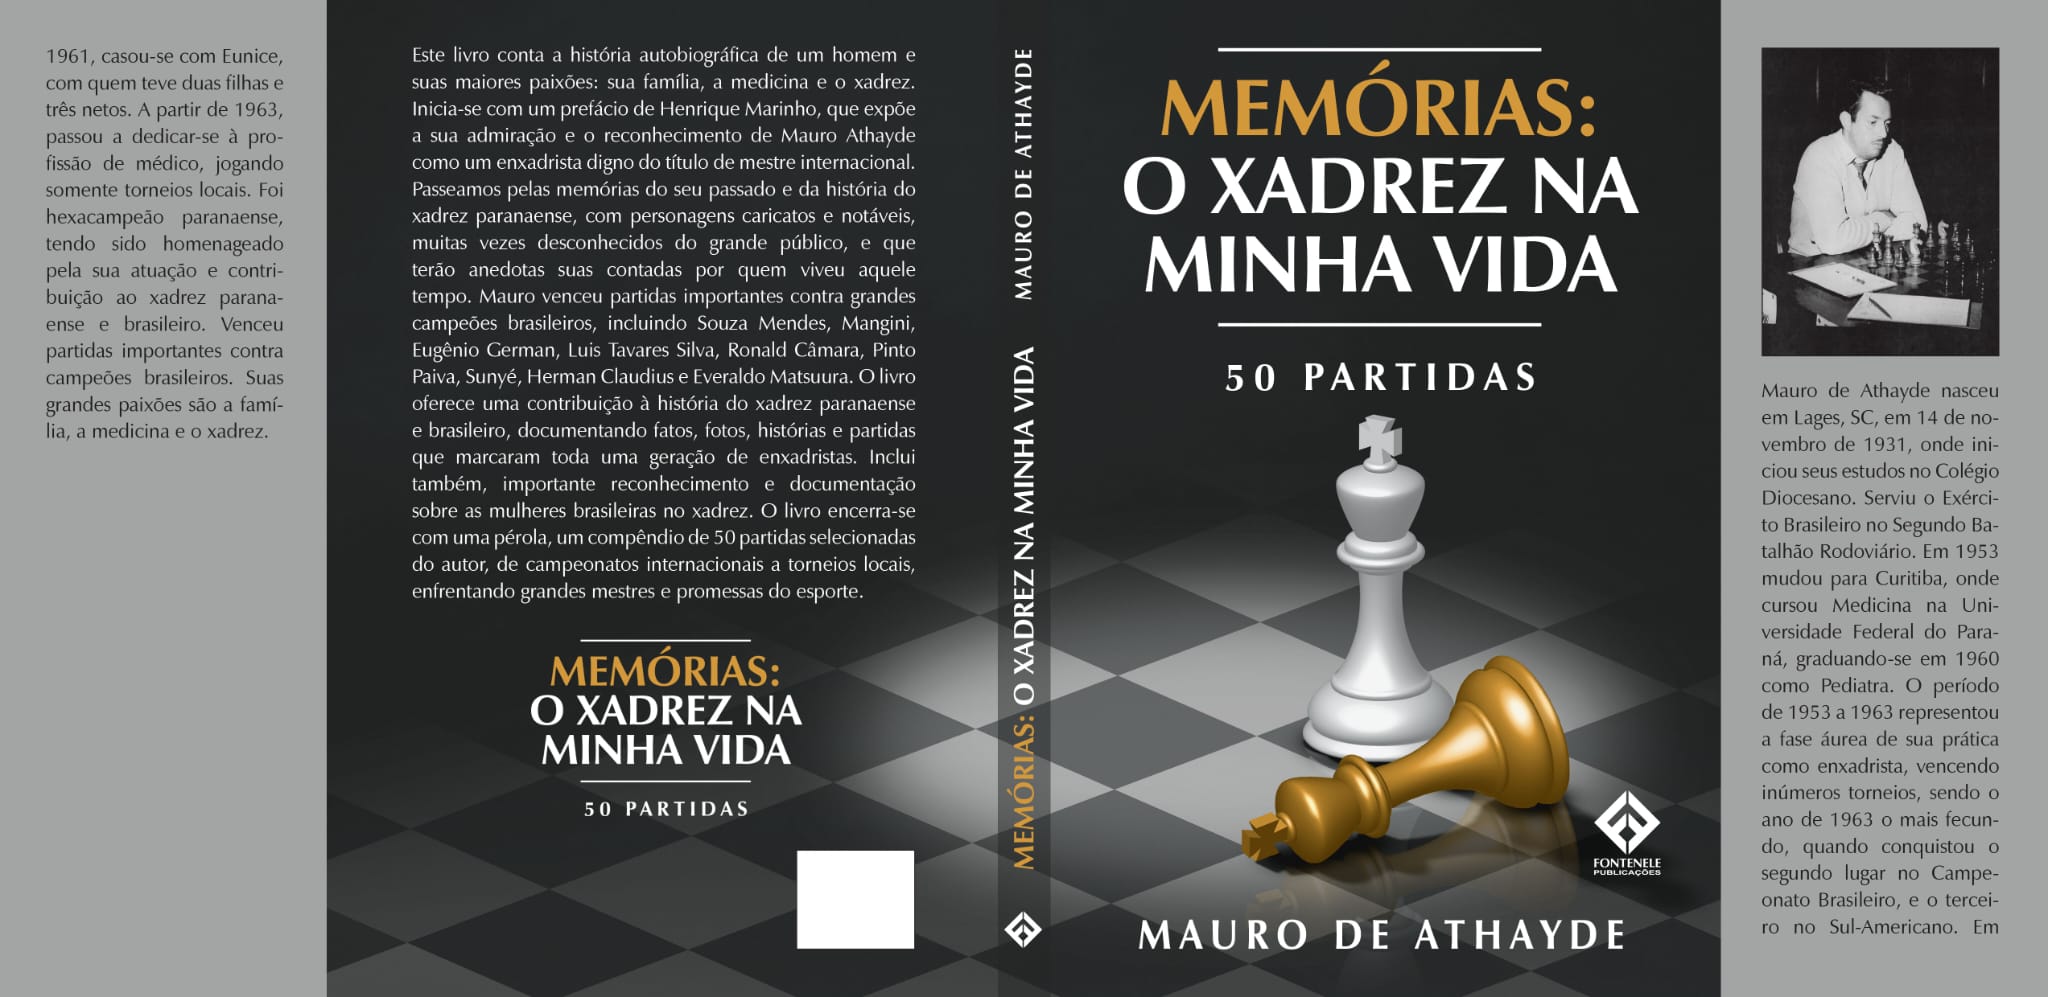 OS MALEFÍCIOS DO XADREZ por Iridio Johansen de Moura – Clube de Xadrez